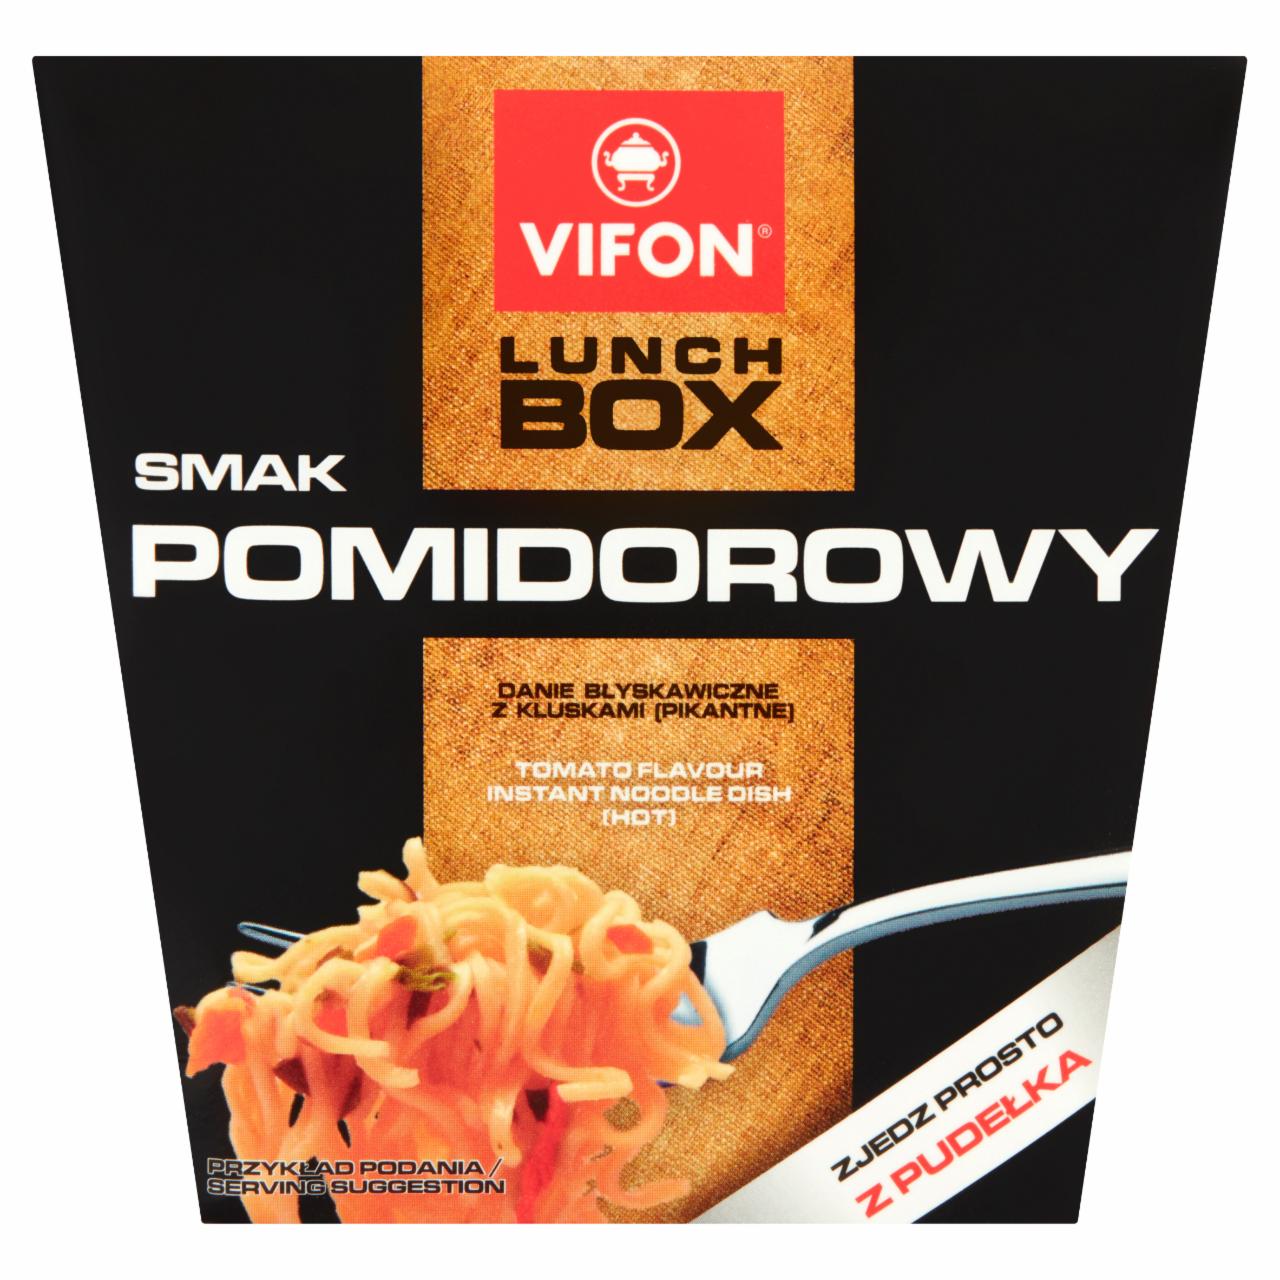 Zdjęcia - Vifon Lunch Box Danie błyskawiczne smak pomidorowy 80 g